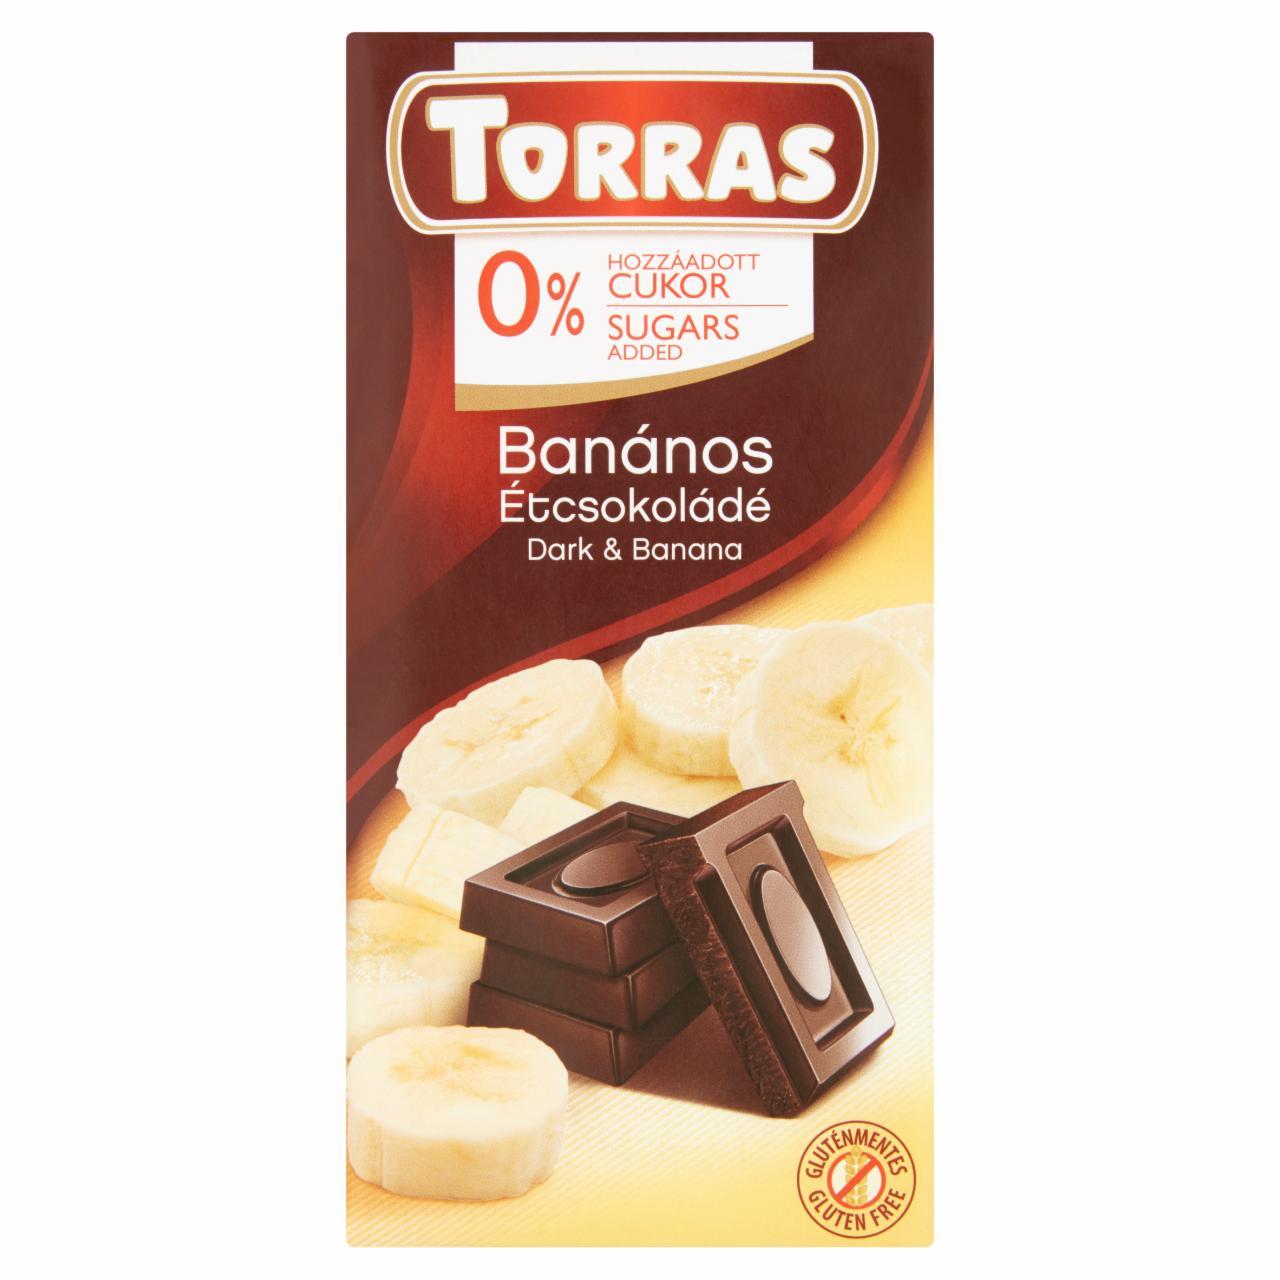 Képek - Torras banános étcsokoládé édesítőszerrel 75 g